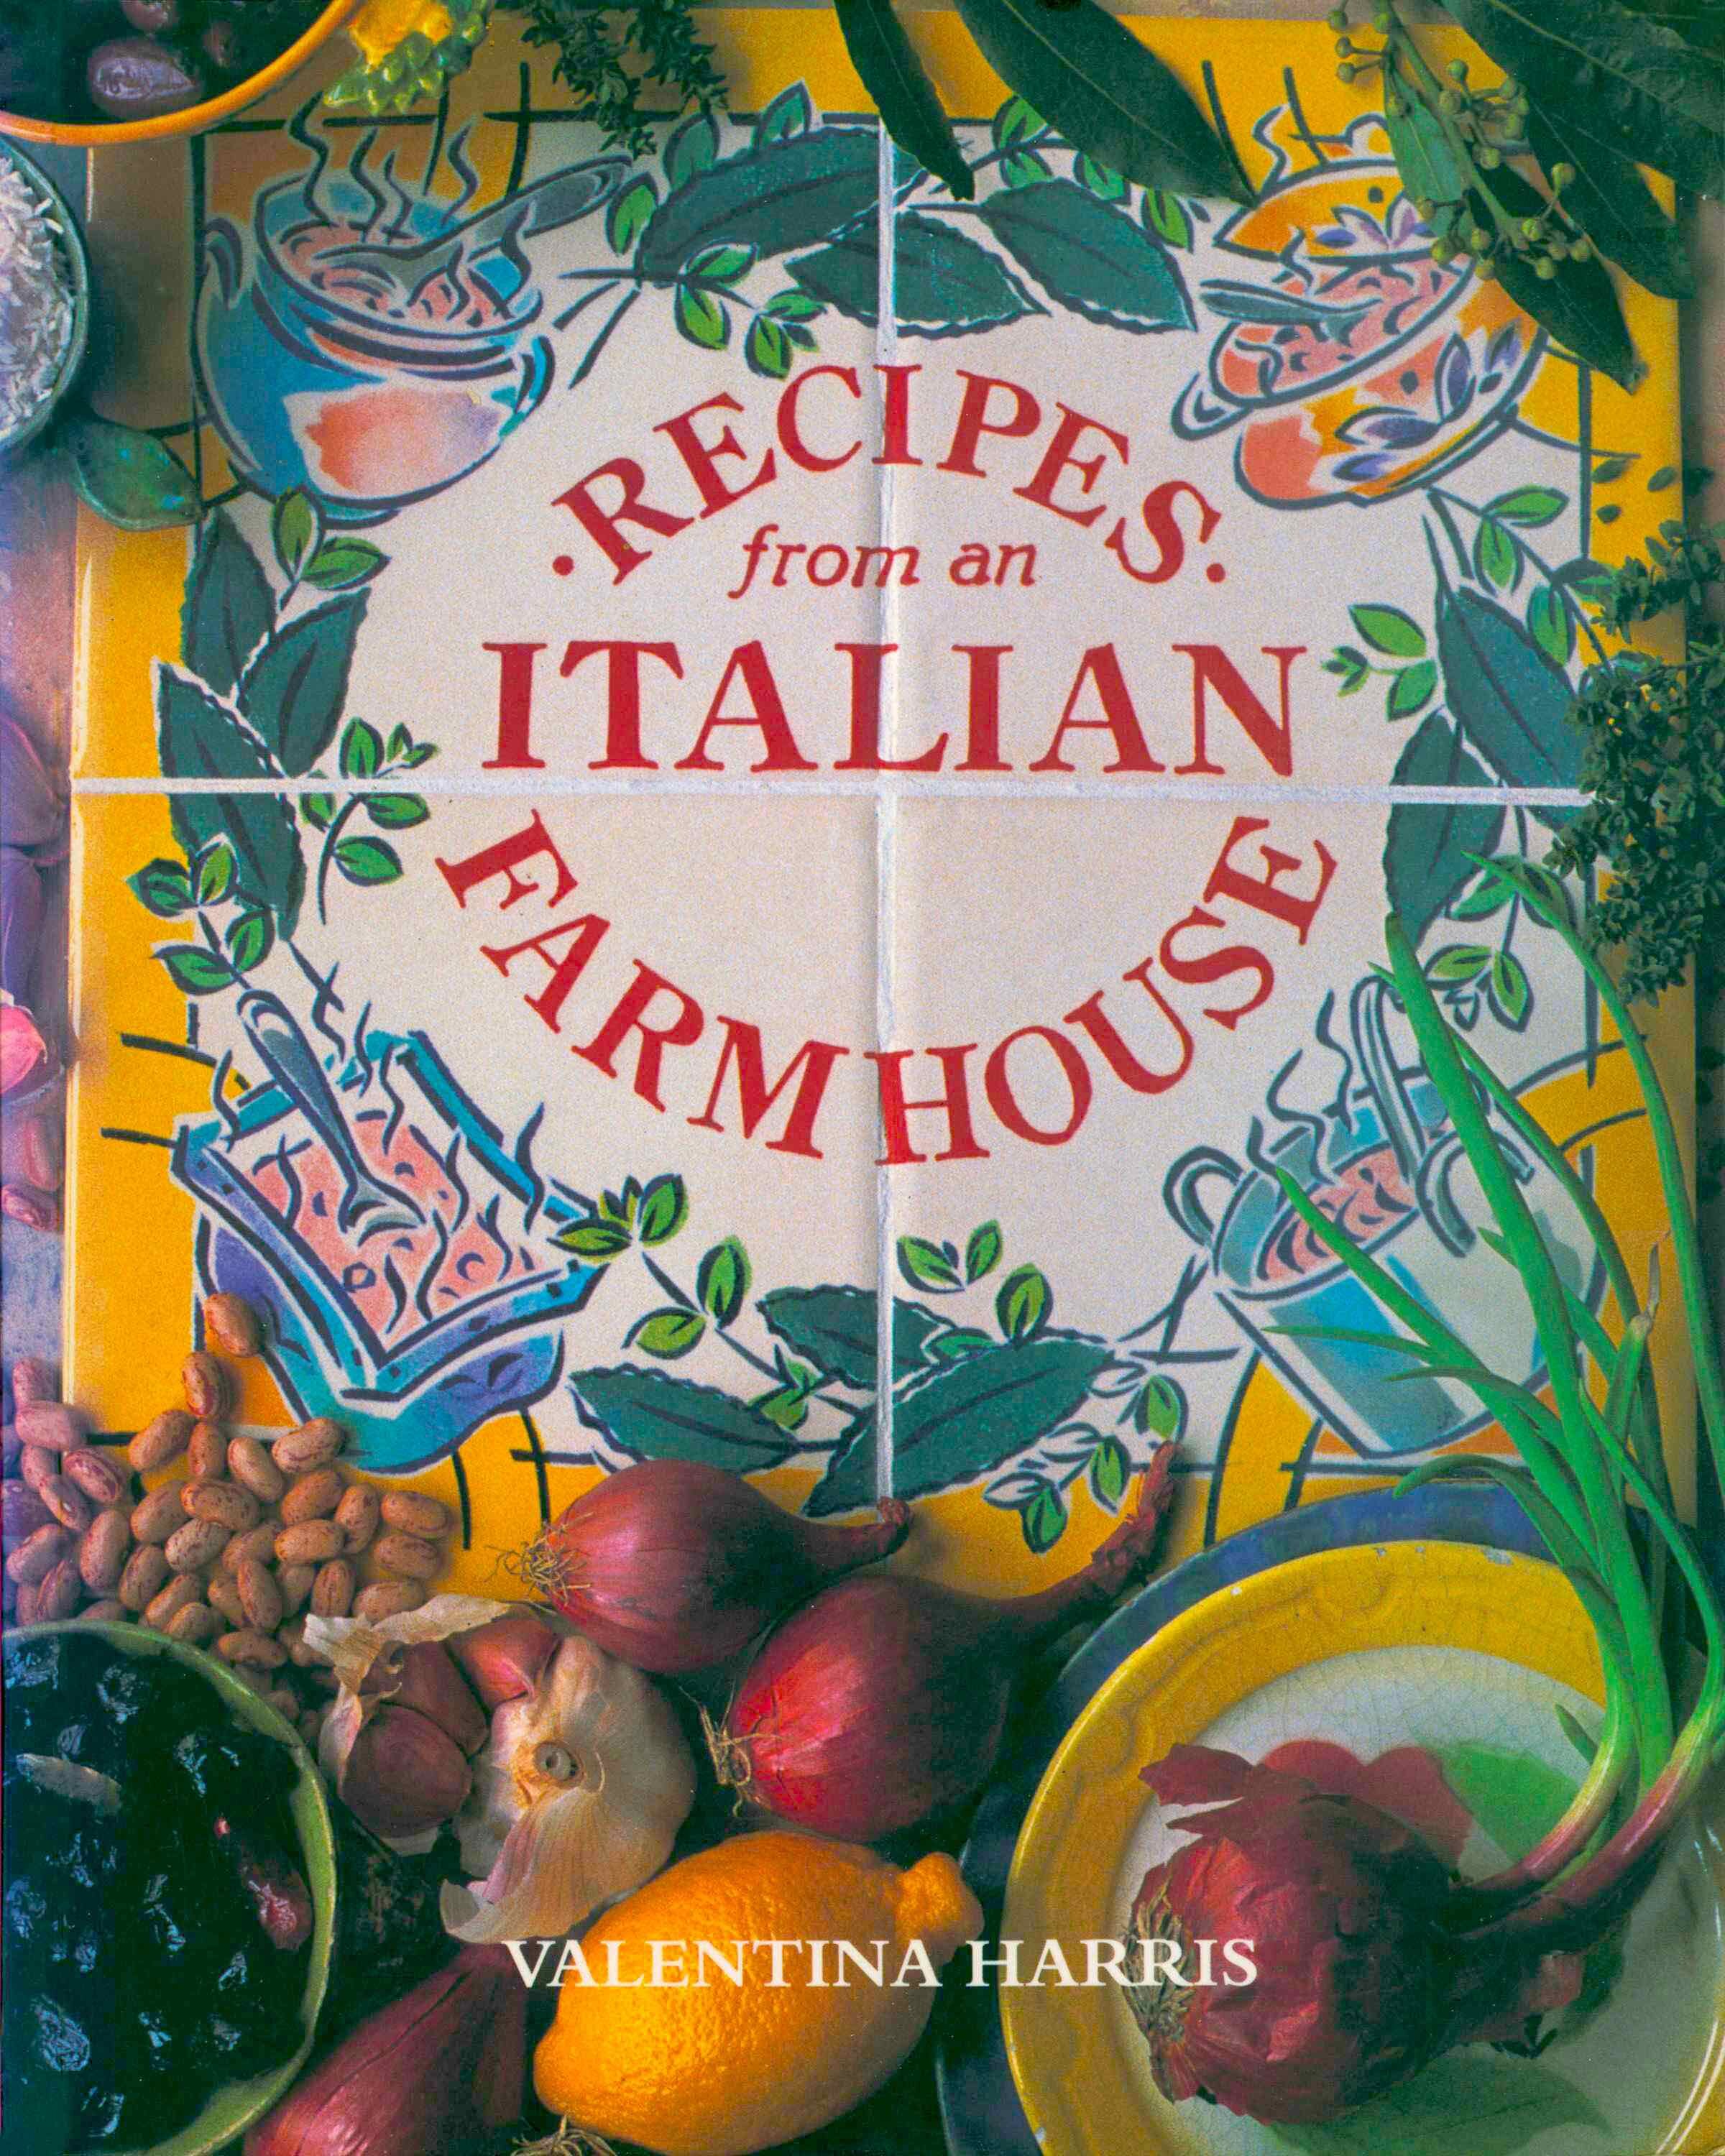 Recipes from an Italian Farmhouse by Valentina Harris